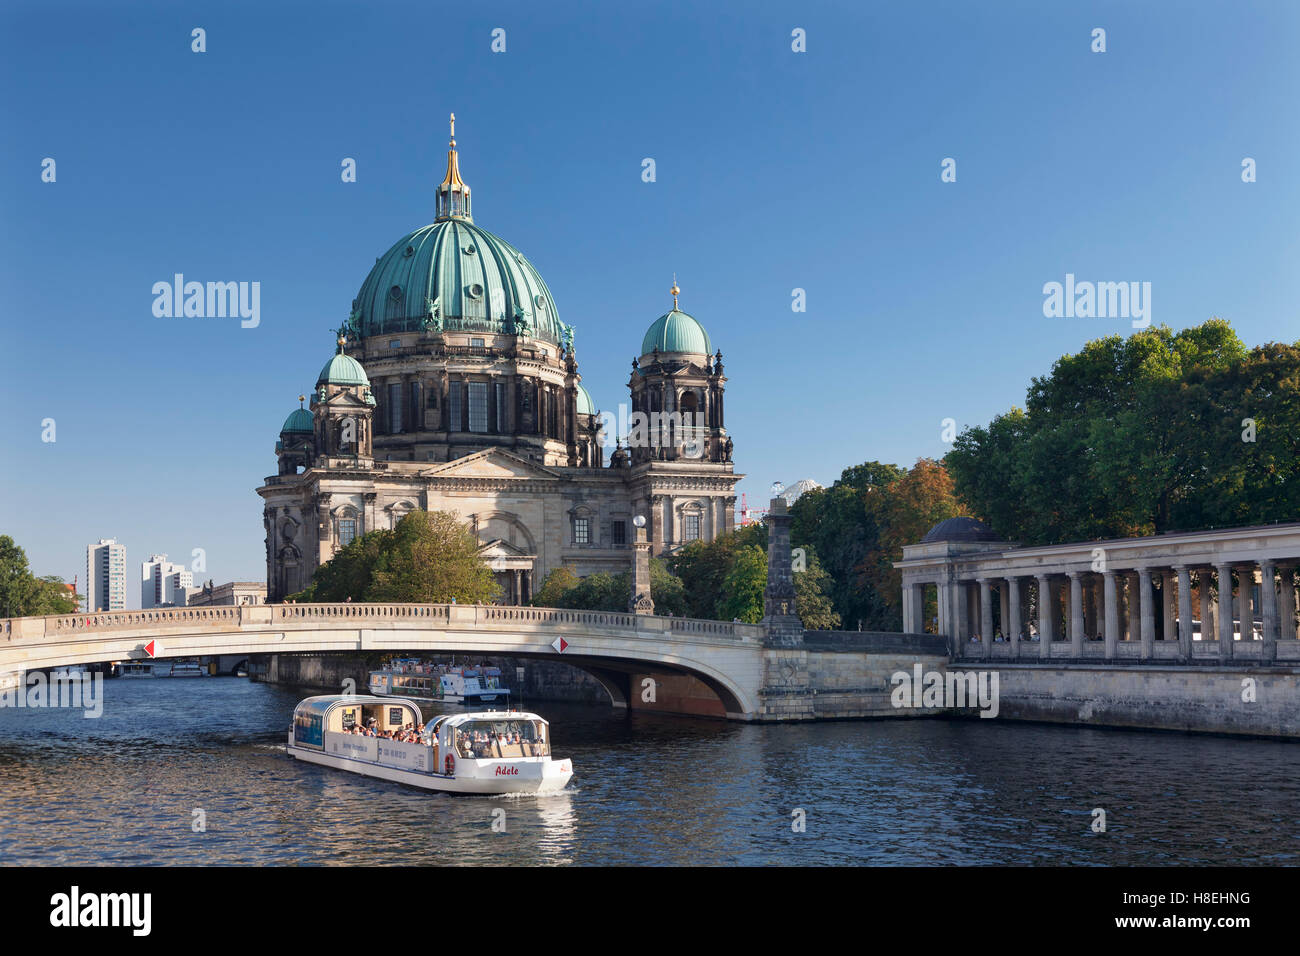 Excursiones en barco en el río Spree, Berliner Dom (catedral de Berlín), el río Spree, la Isla de los museos, la UNESCO, Mitte, Berlin Foto de stock